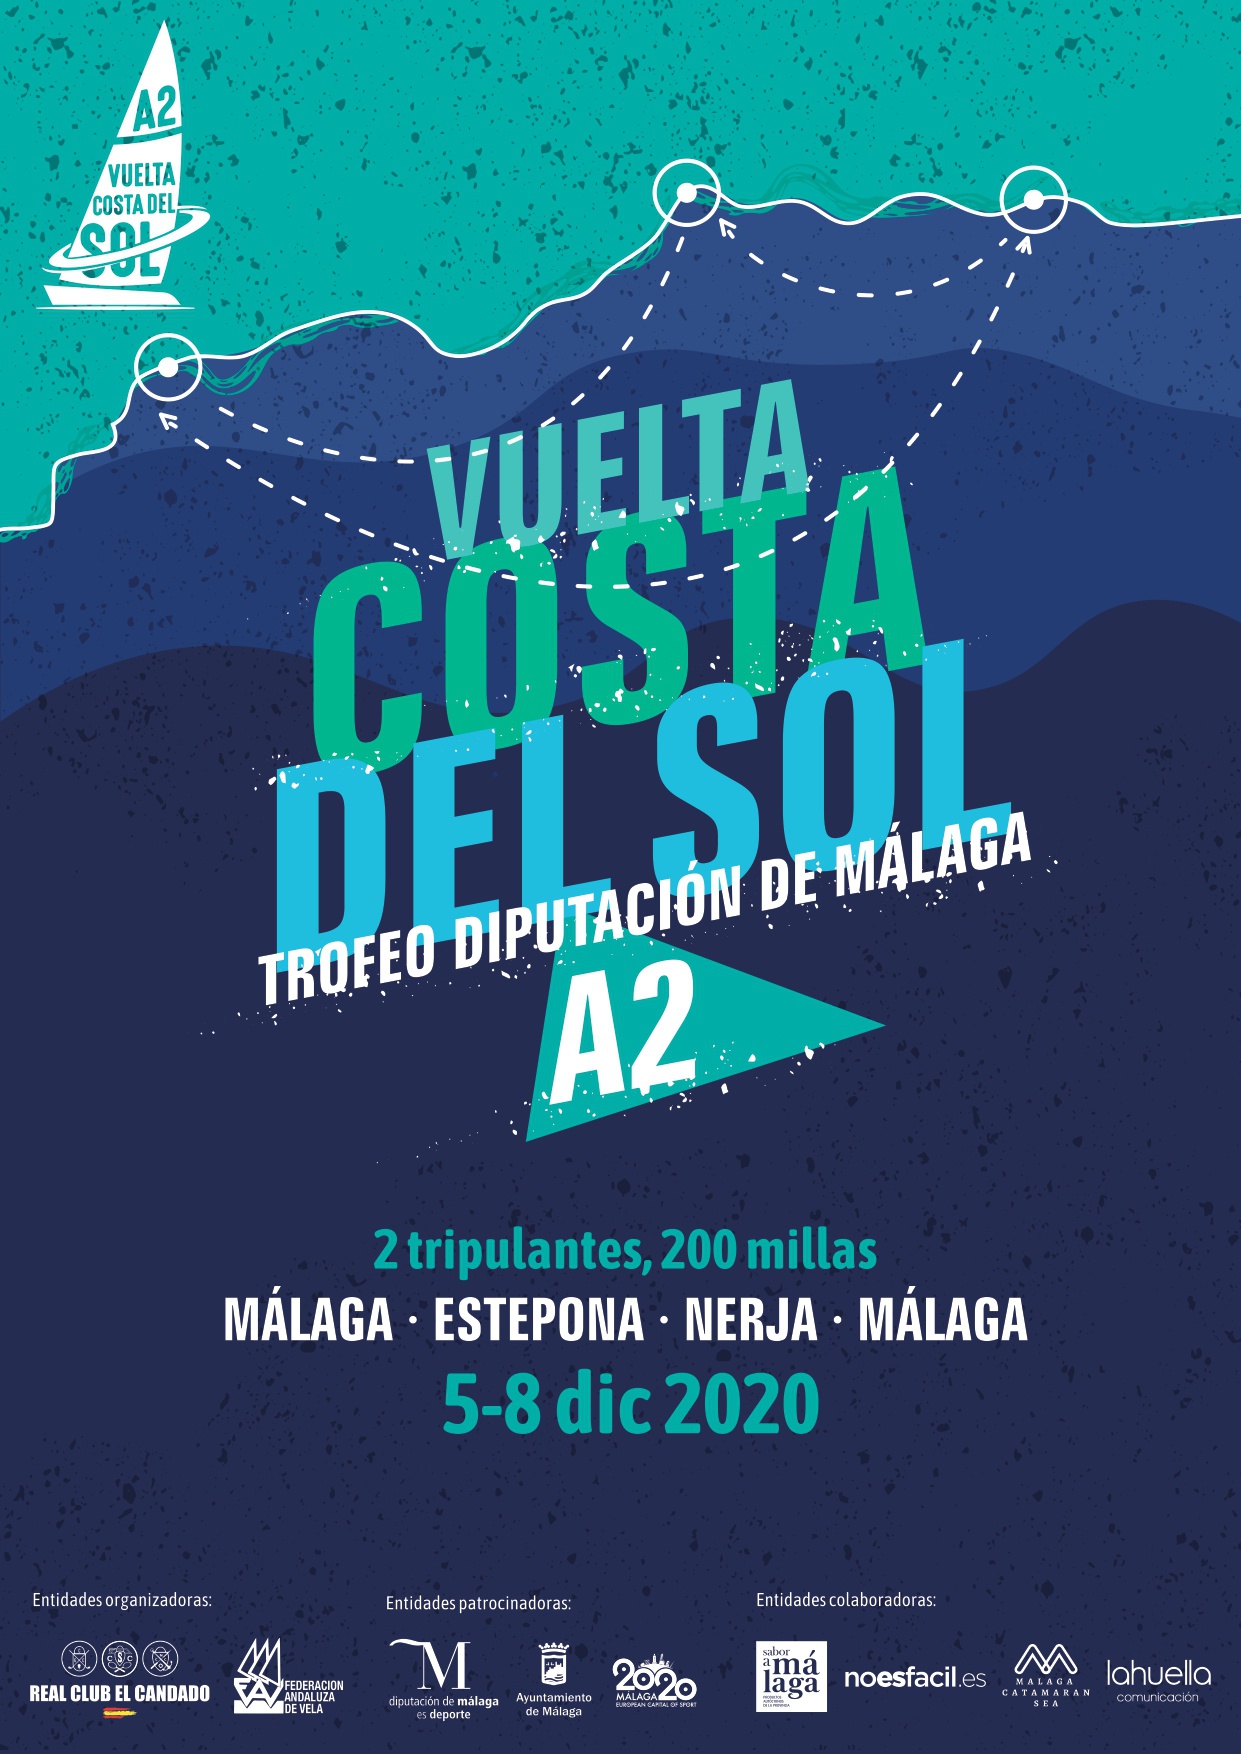 Vuelta Costa del Sol- Trofeo Diputación de Málaga